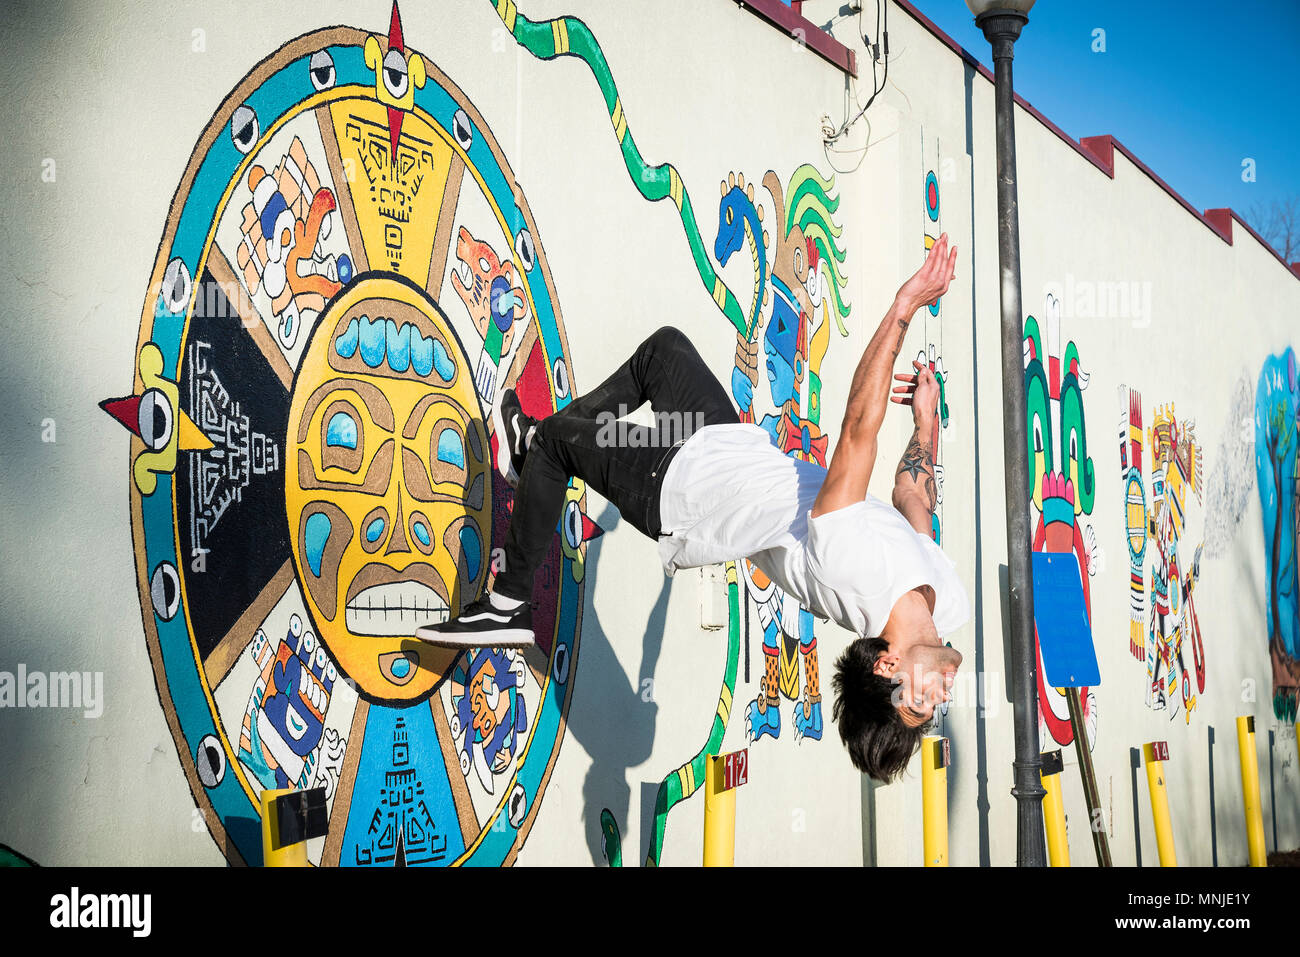 Junge parkour Sportler backflip aus tun, Wall Street Art abgedeckt, Denver, Colorado, USA Stockfoto